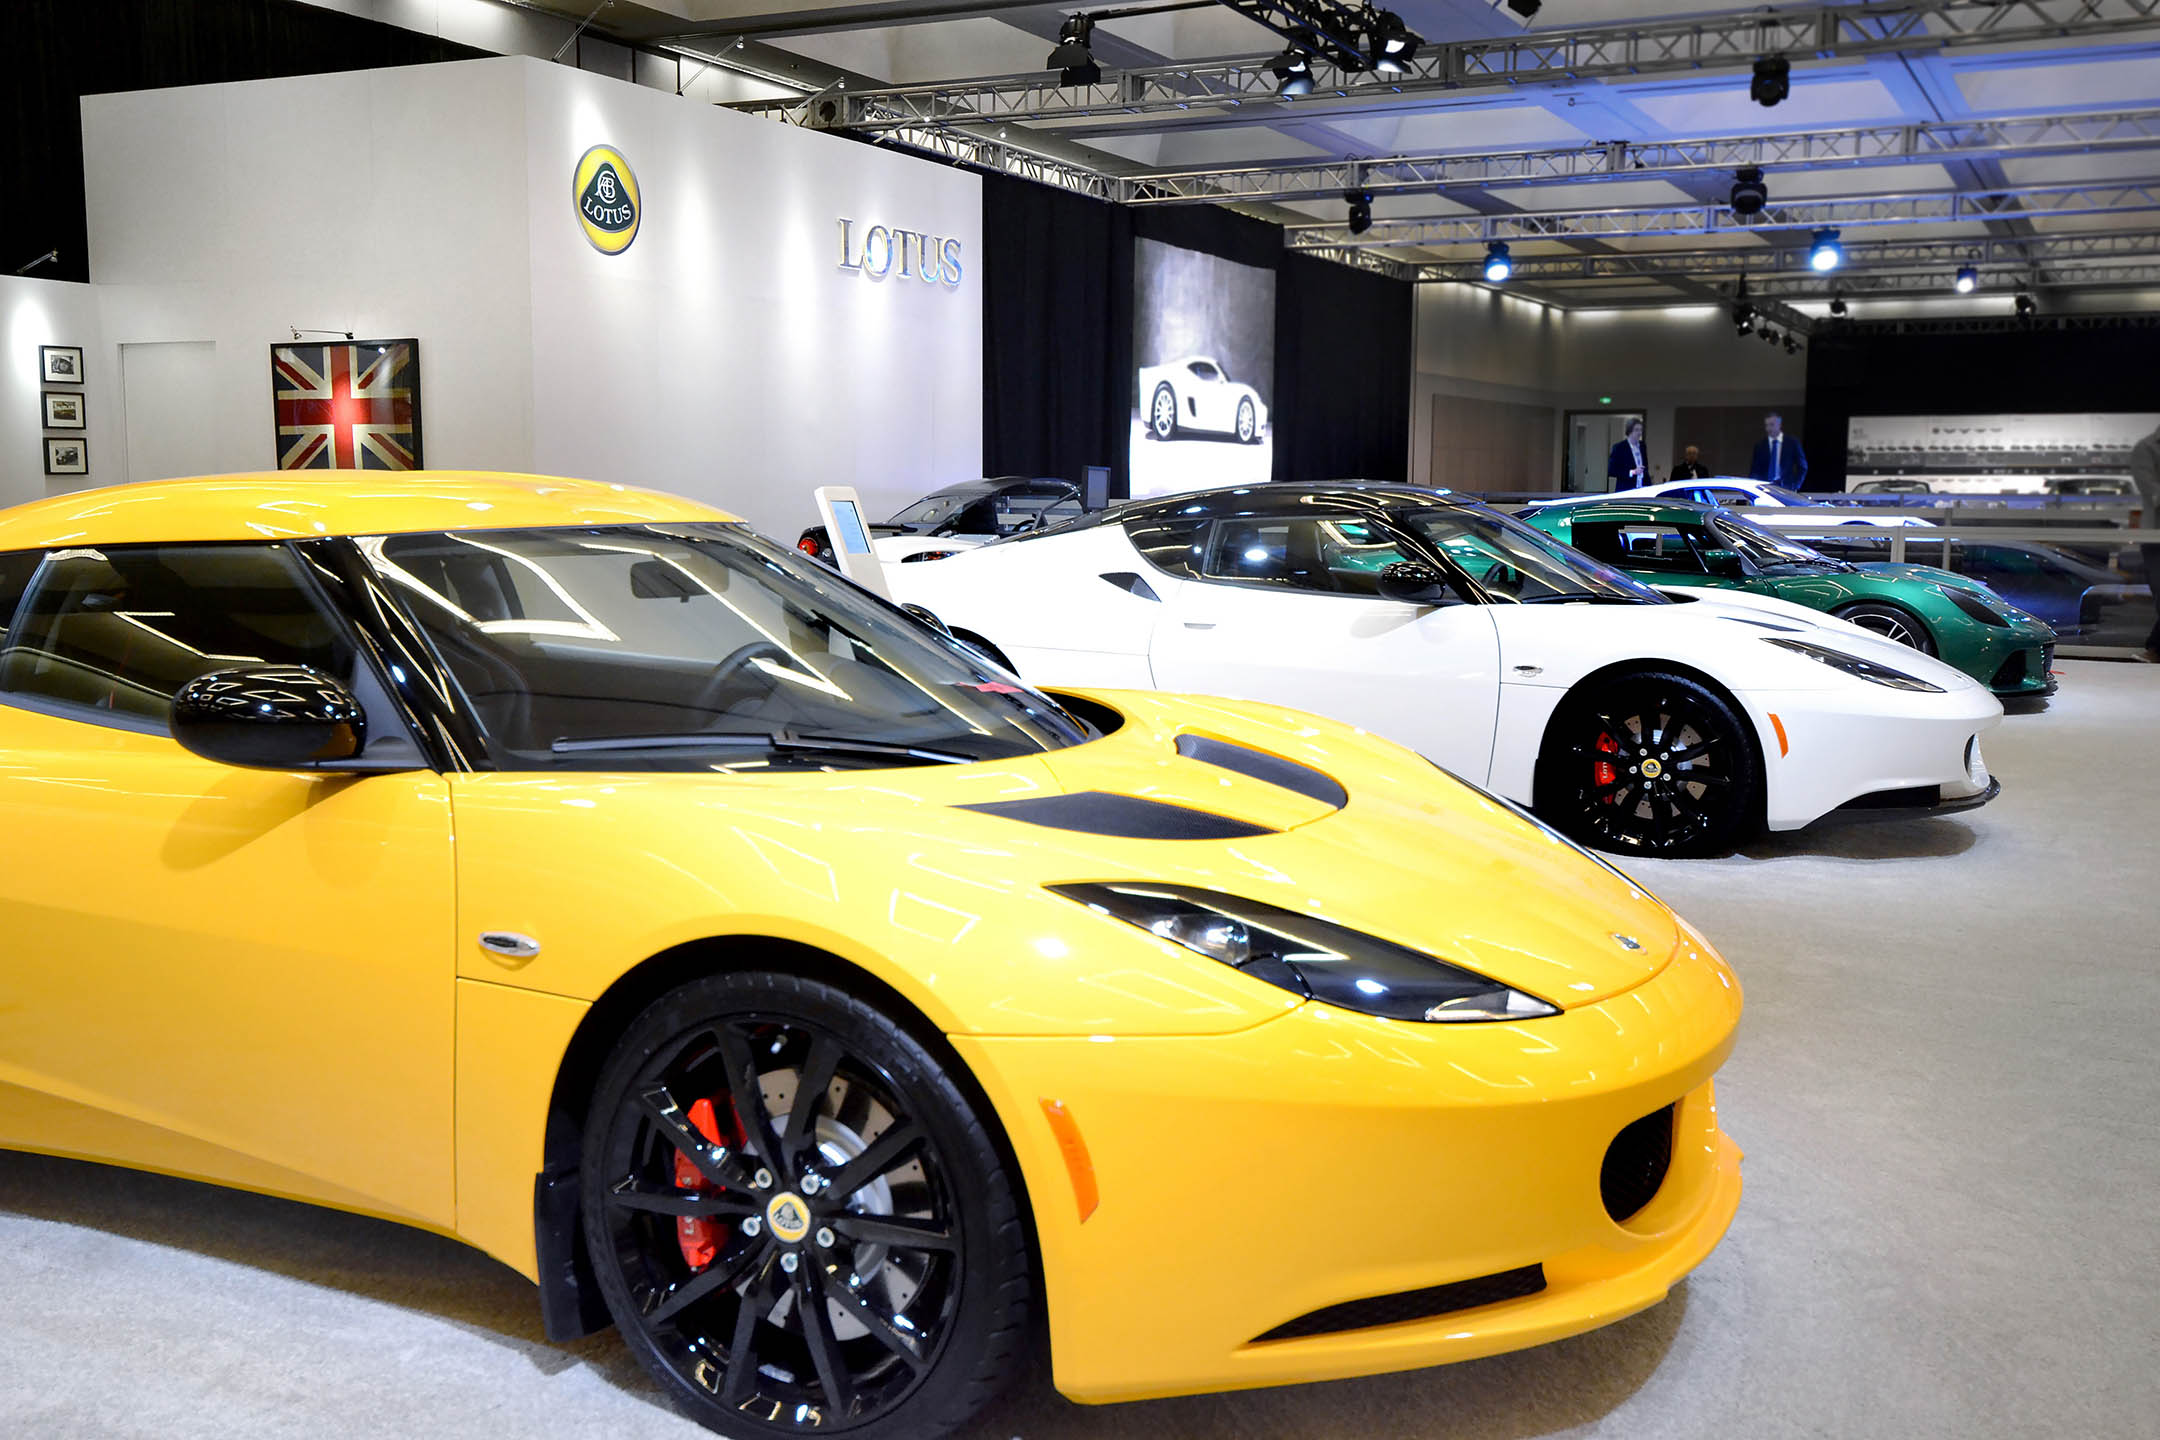 Lotus-LA-Auto-2013-1-1-1.jpg